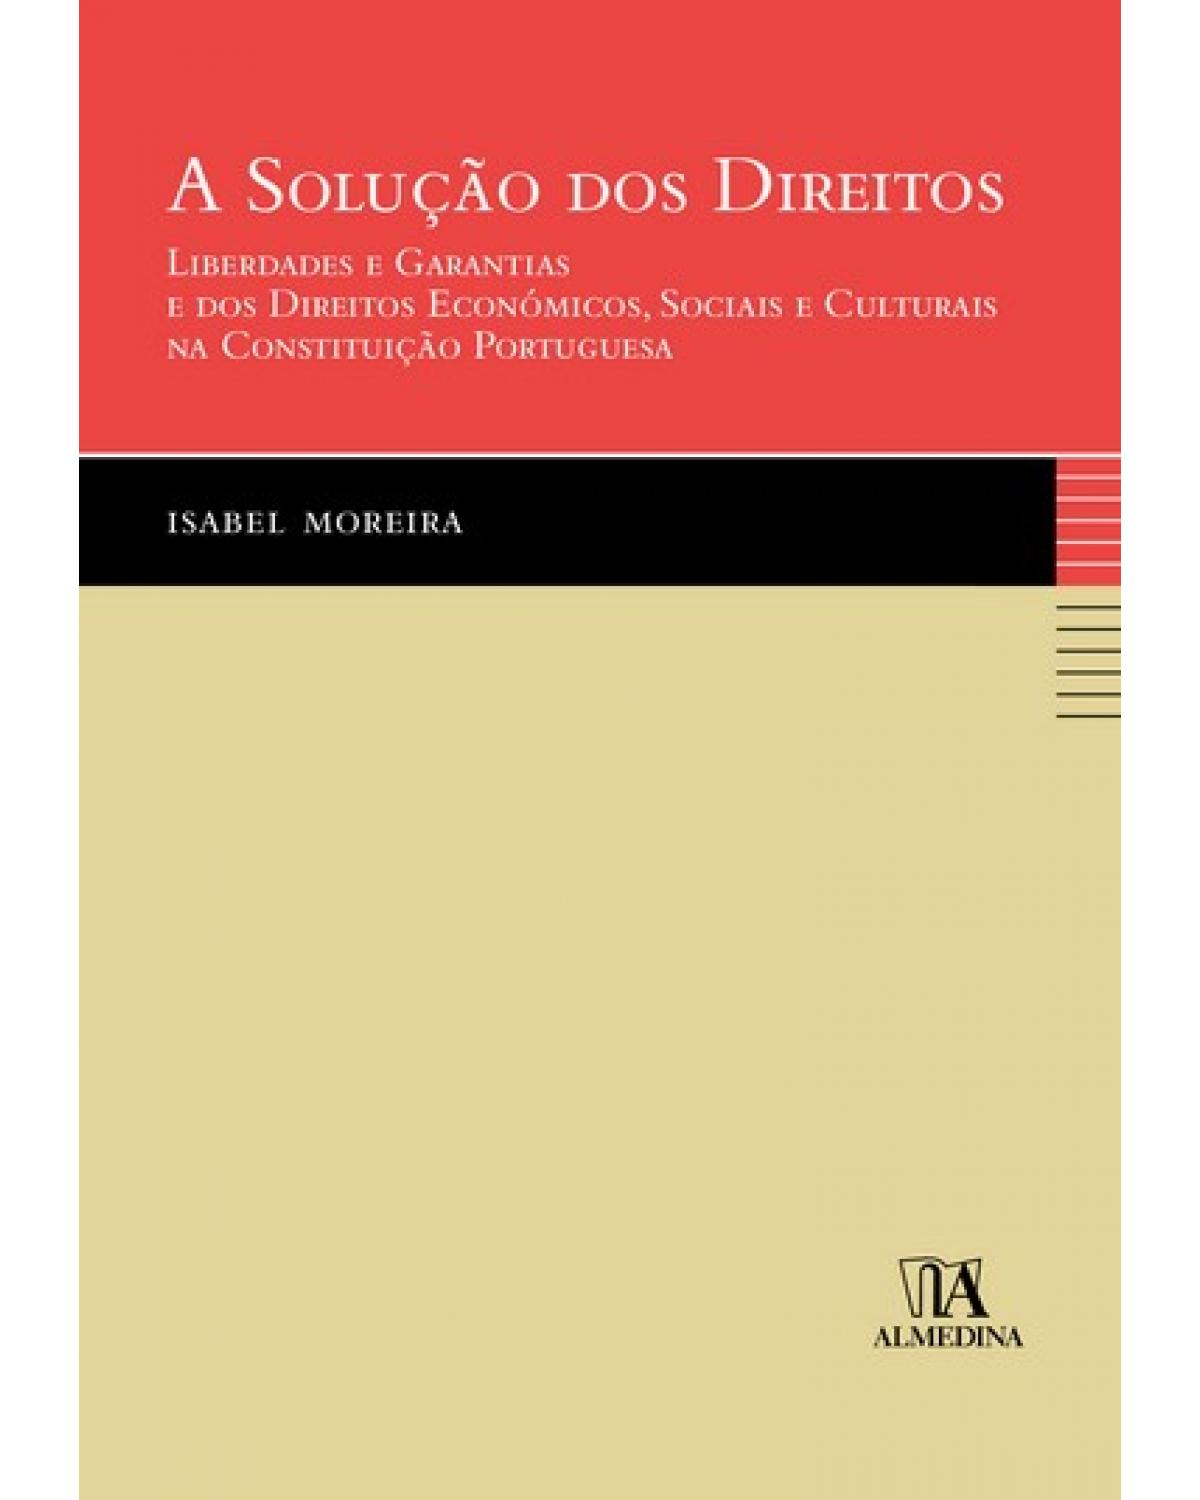 A solução dos direitos - liberdades e garantias e dos direitos económicos, sociais e culturais na constituição portuguesa - 1ª Edição | 2007